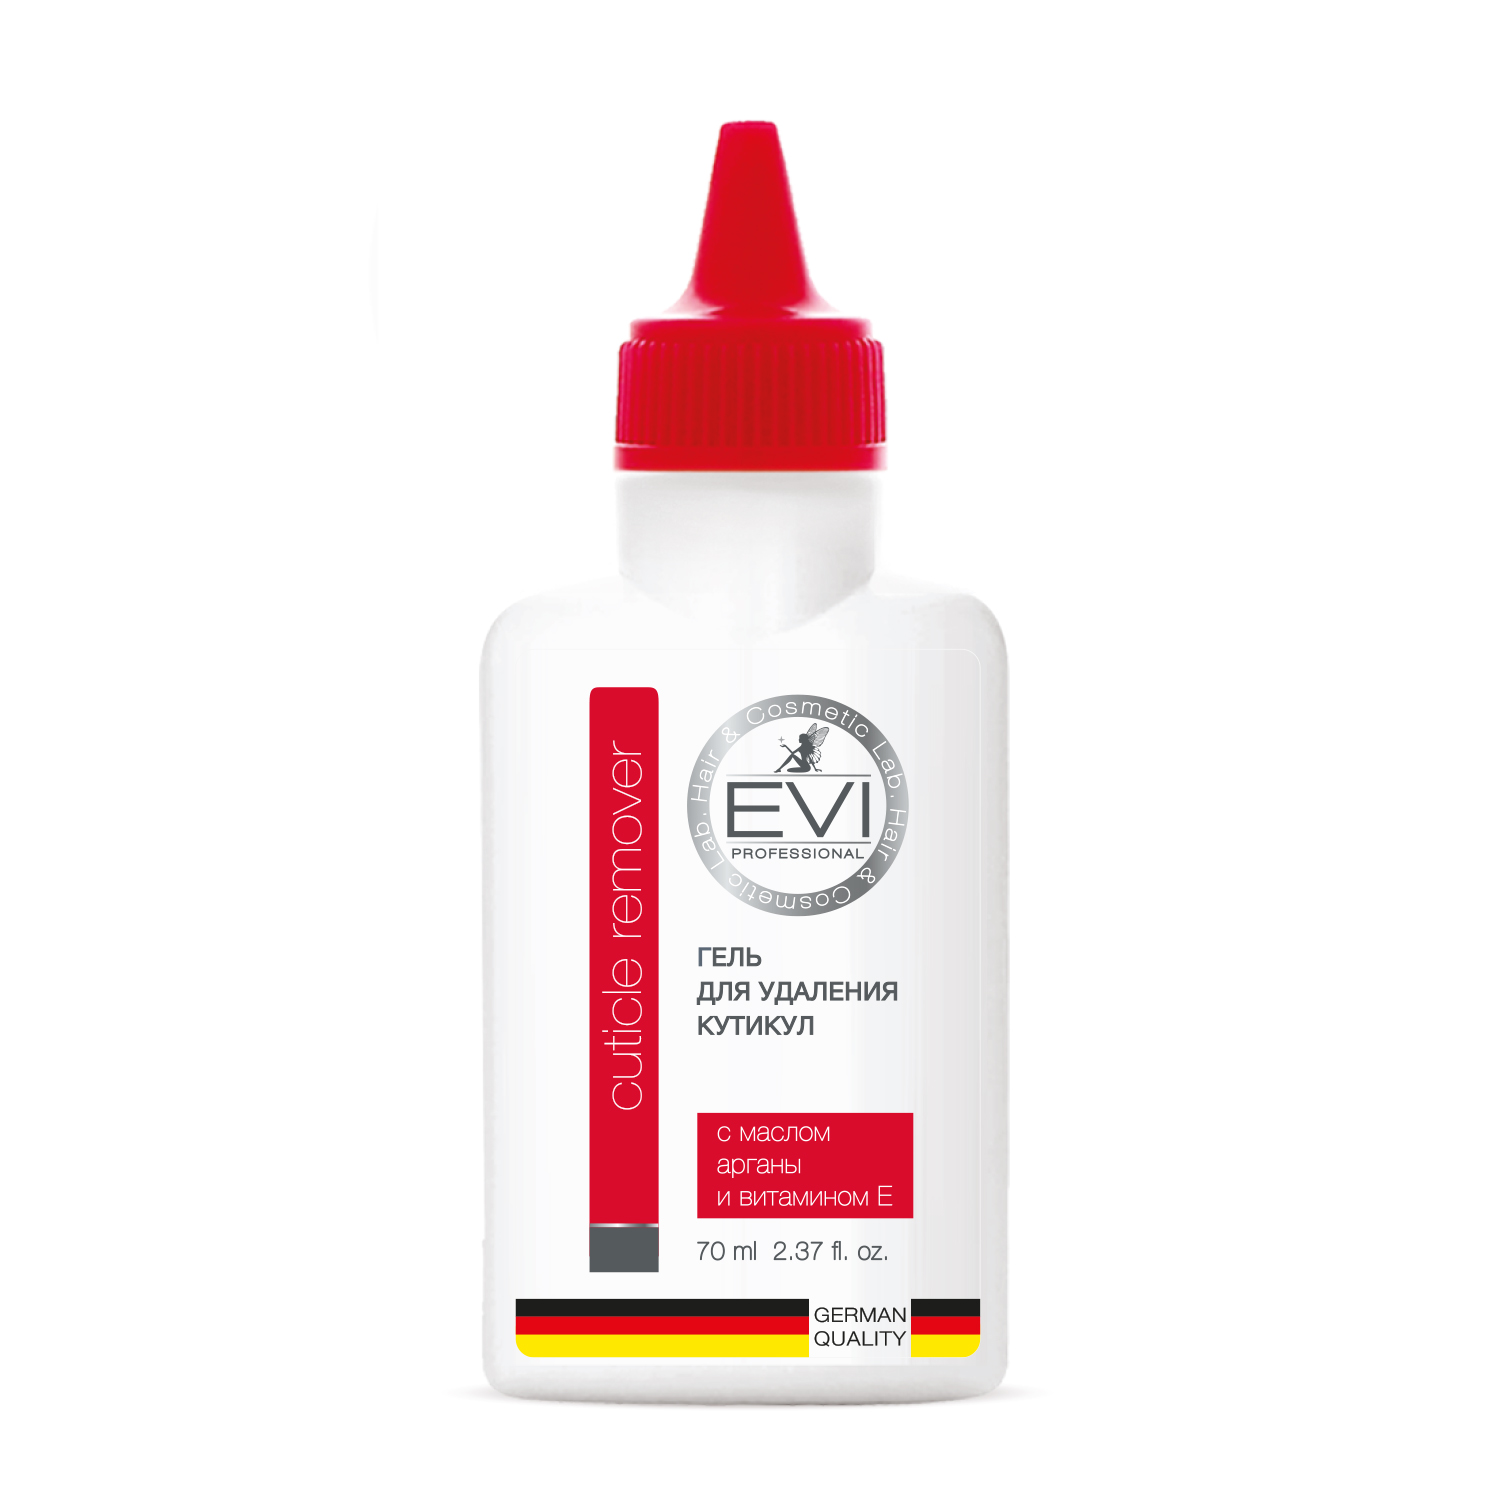 Гель Evi Professional Для удаления кутикулы с маслом арганы и витамином Е - фото 1